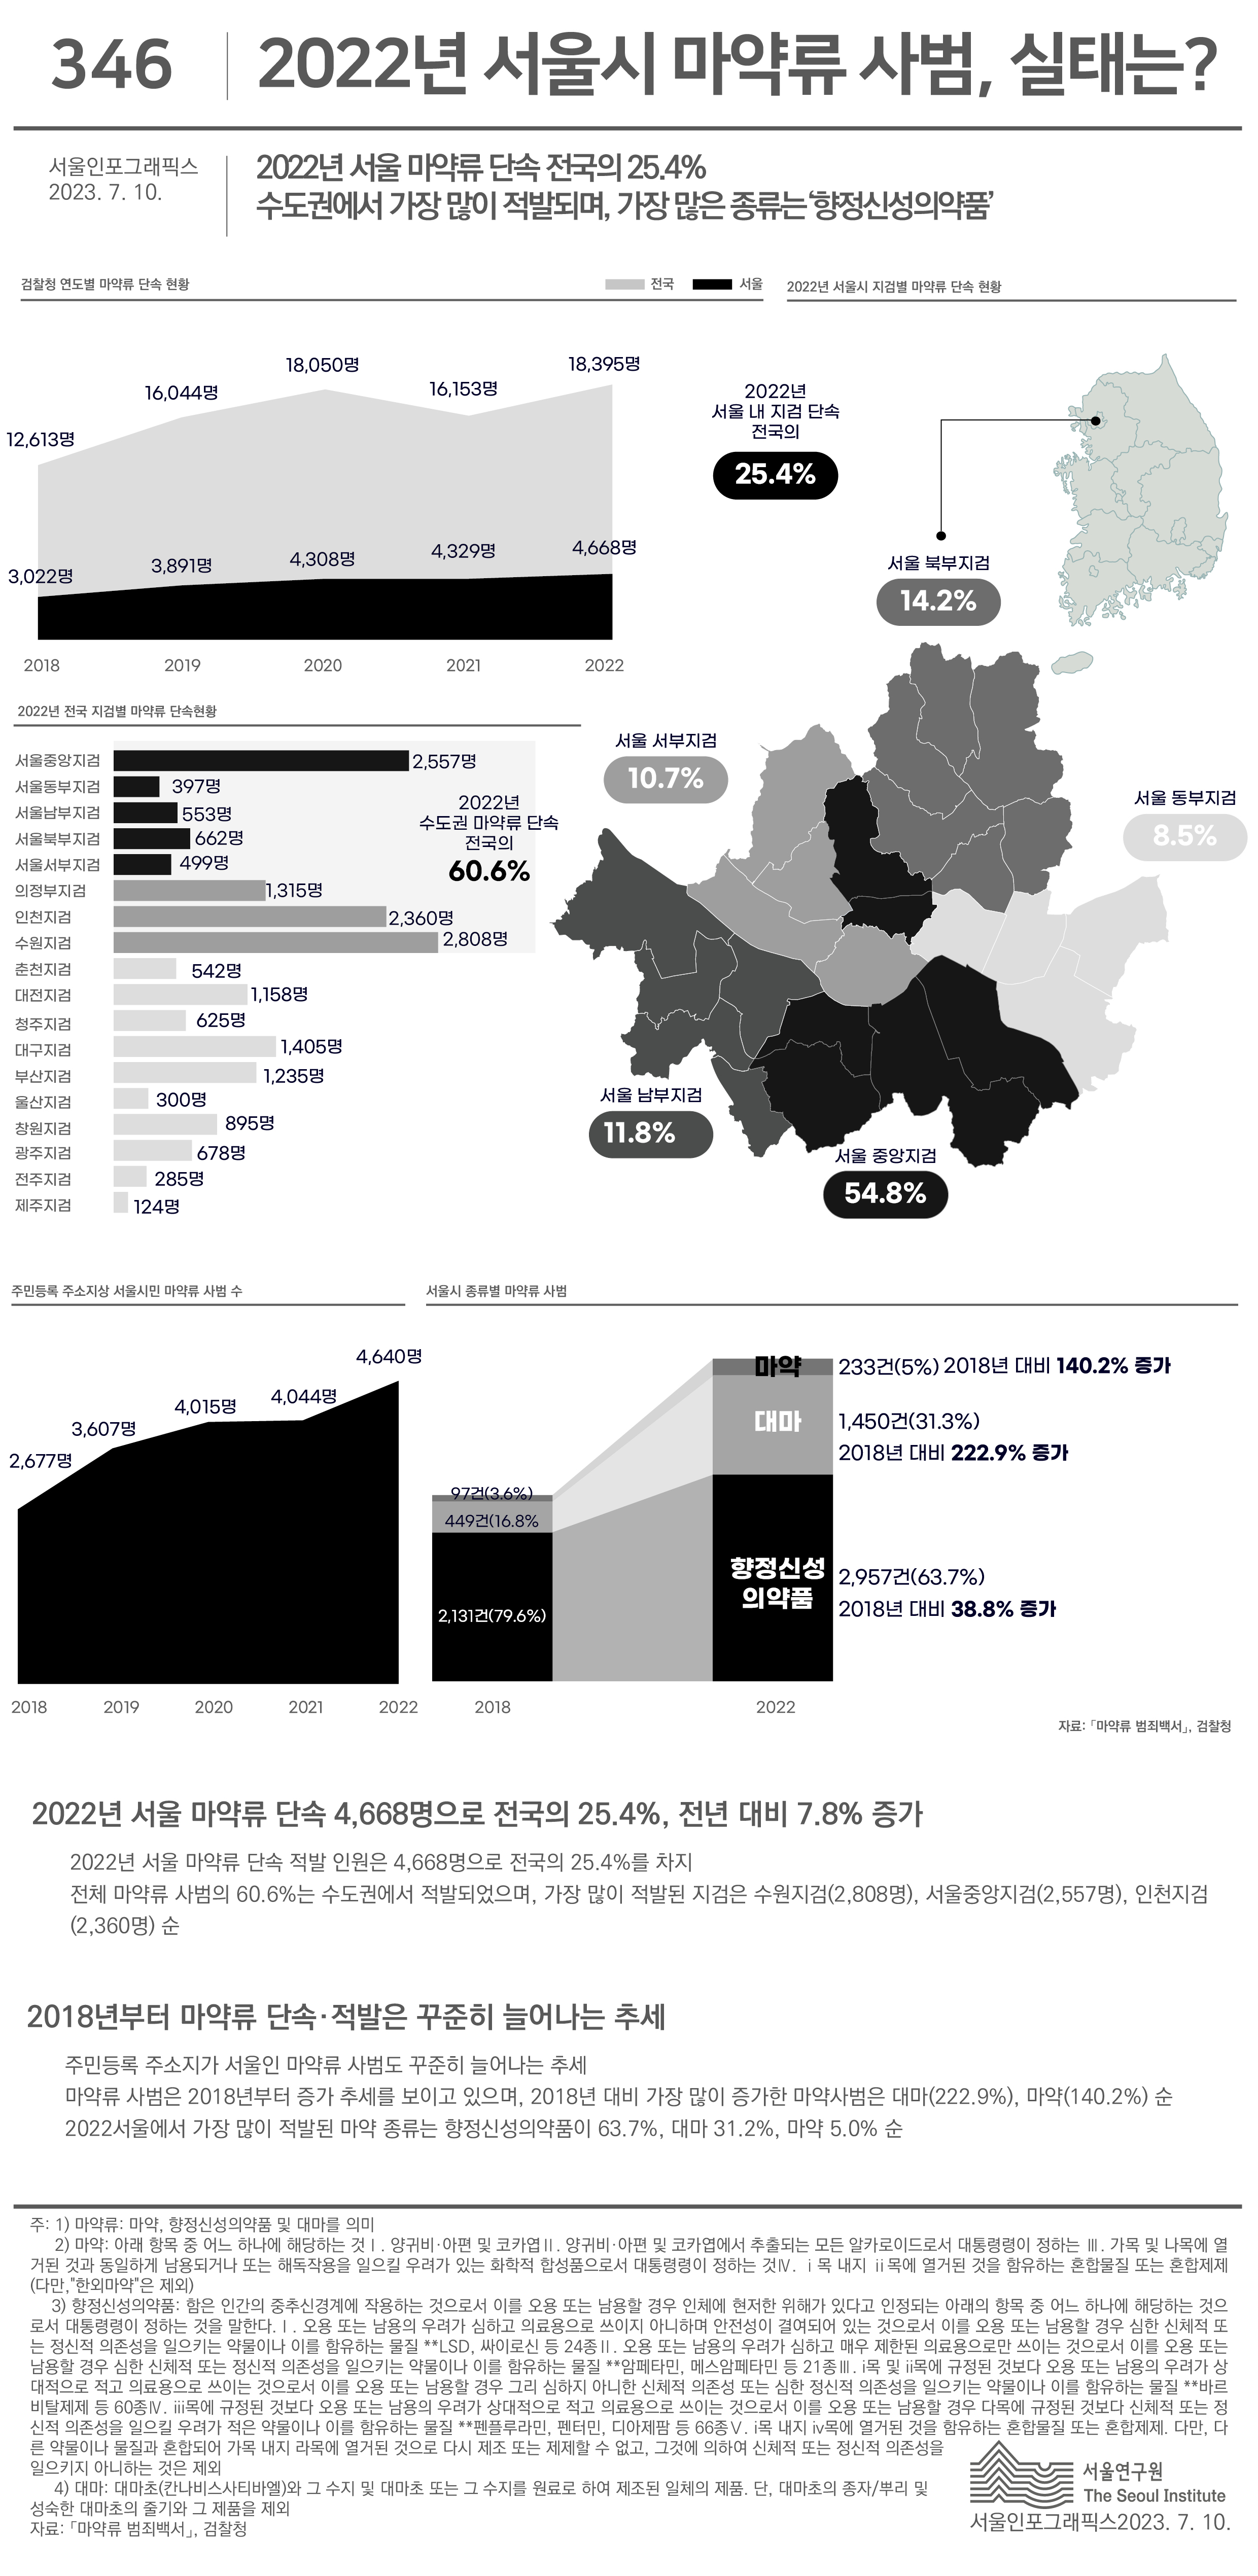  2022년 서울 마약류 단속 전국의 25.4%  수도권에서 가장 많이 적발되며, 가장 많은 종류는‘향정신성의약품’  으로 정리될 수 있습니다. 인포그래픽으로 제공되는 그래픽은 하단에 표로 자세히 제공됩니다.